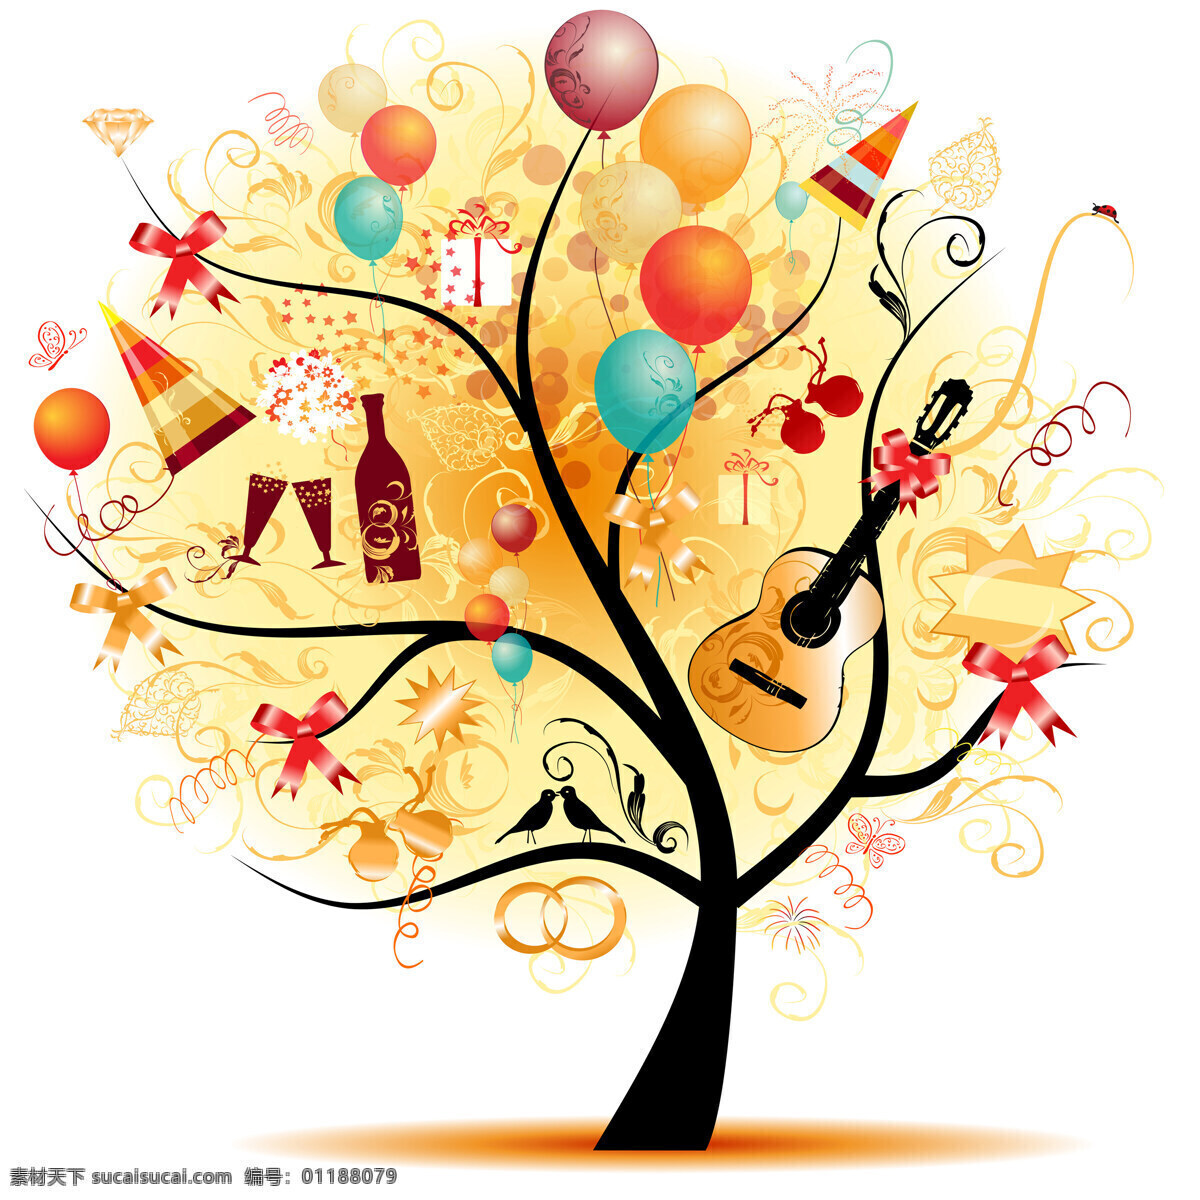 卡通 幸福 树 图案 卡通幸福树 卡通树 音乐 吉他 气球树 唯美卡通树 装饰图 发财树 幸福树